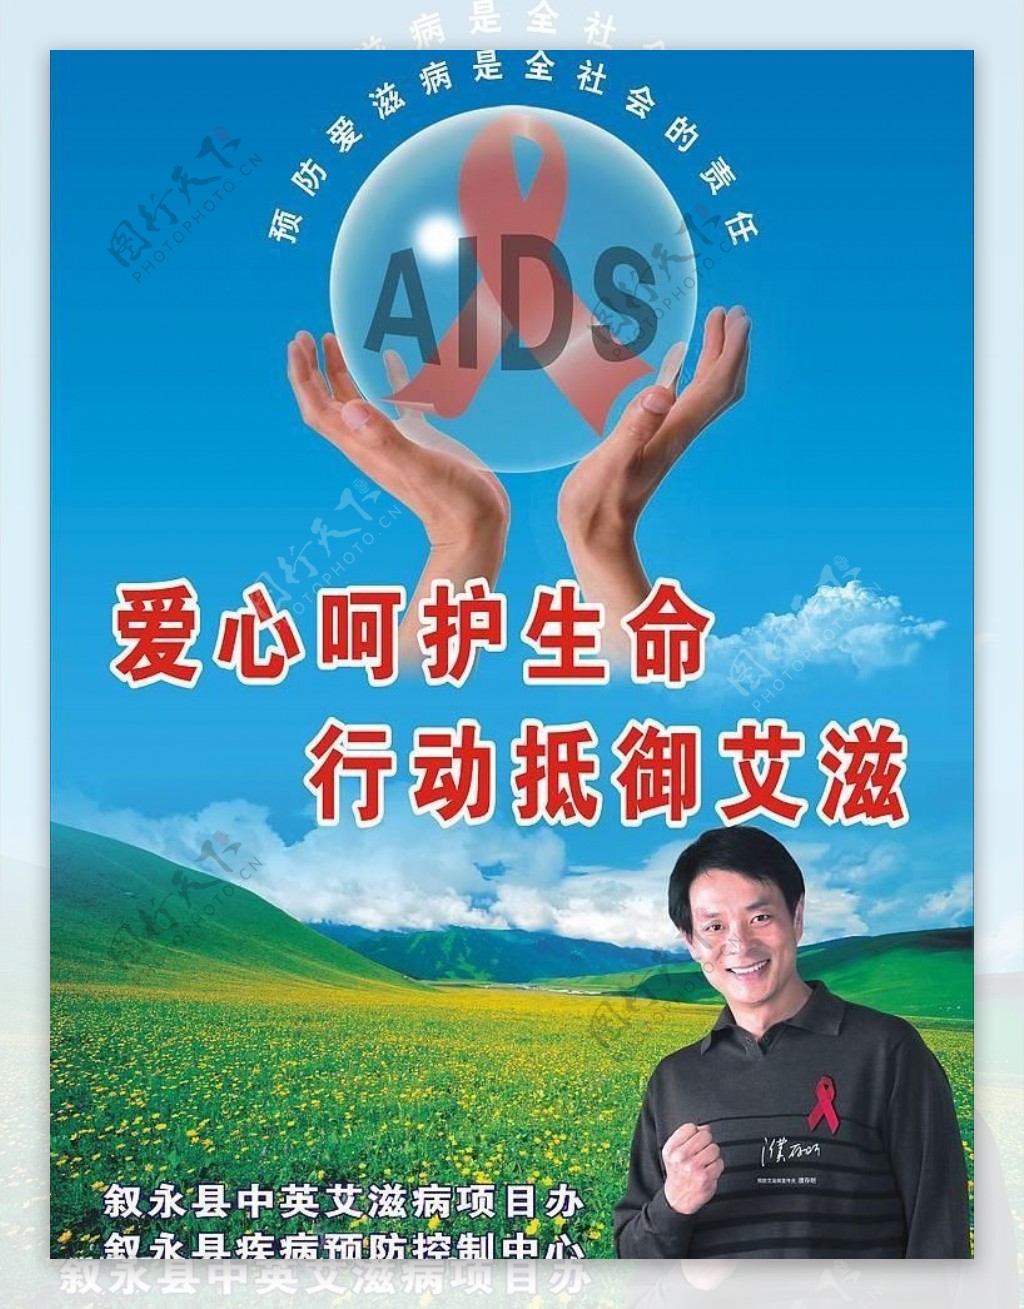 户外艾滋病公益广告图片